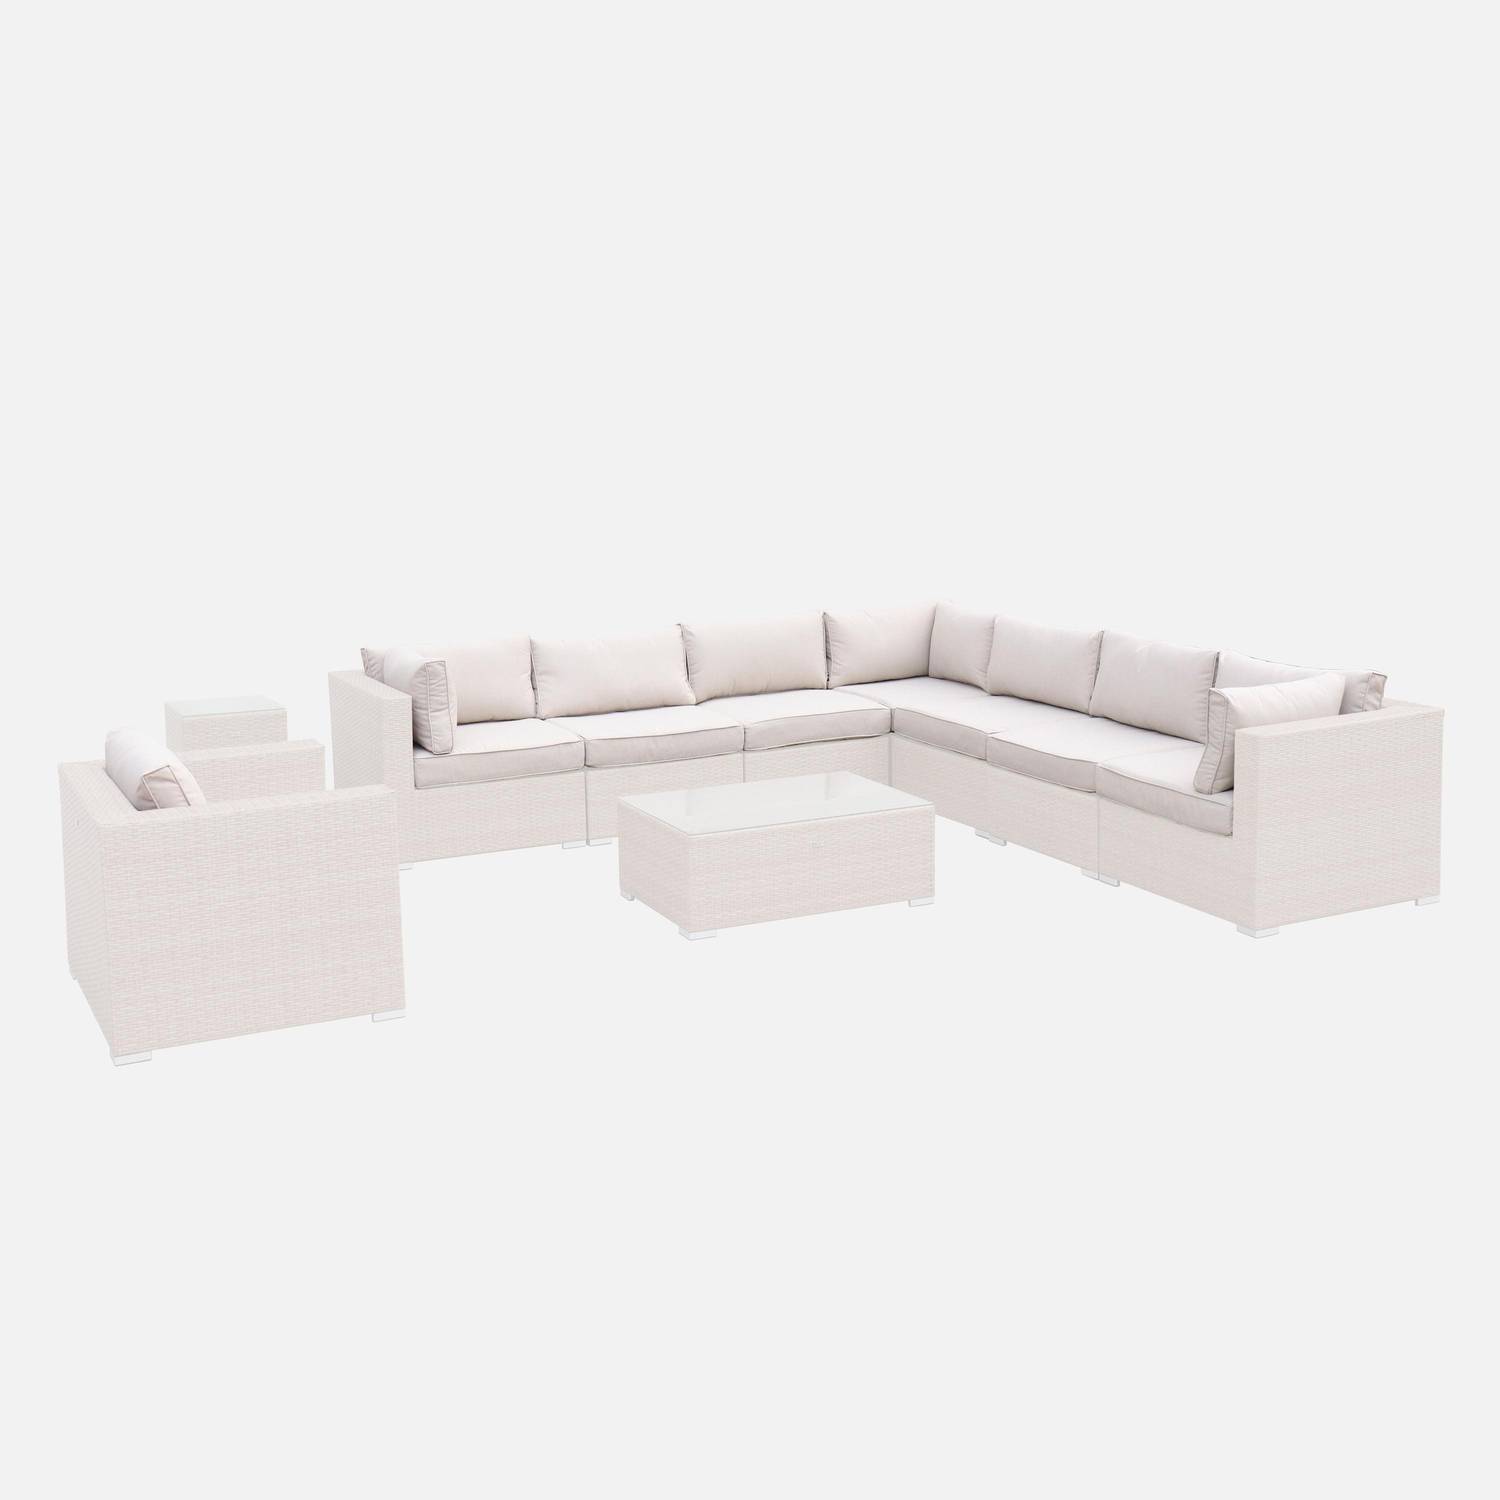 Set di copricuscini beige per mobili da giardino Venezia - set completo Photo1